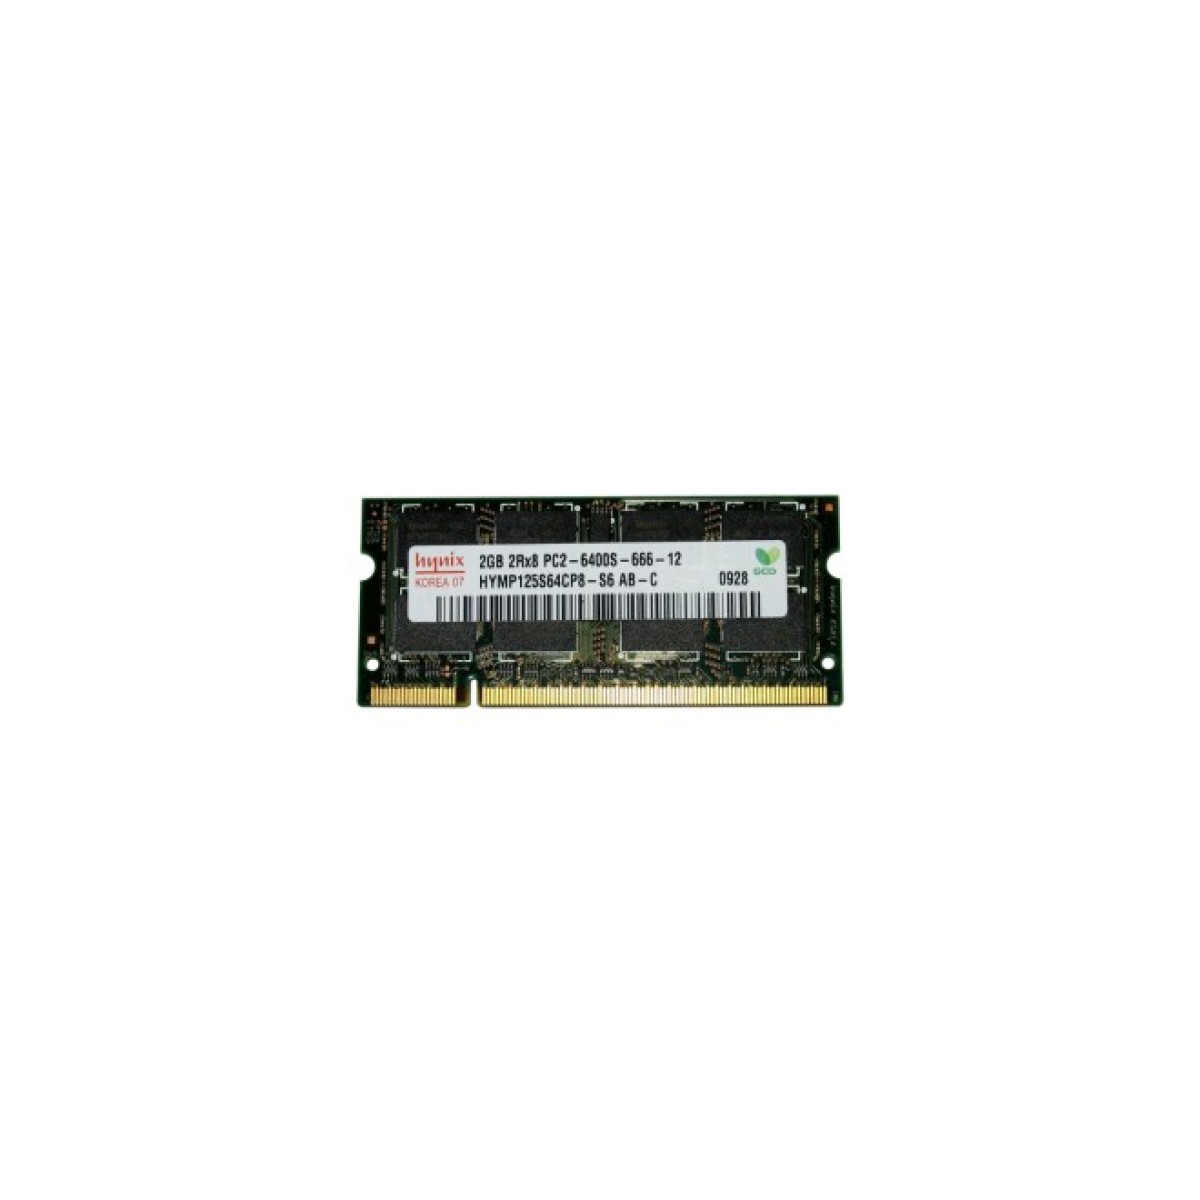 Модуль памяти для ноутбука SoDIMM DDR2 2GB 800 MHz Hynix (HYMP125S64CP8-S6) 256_256.jpg